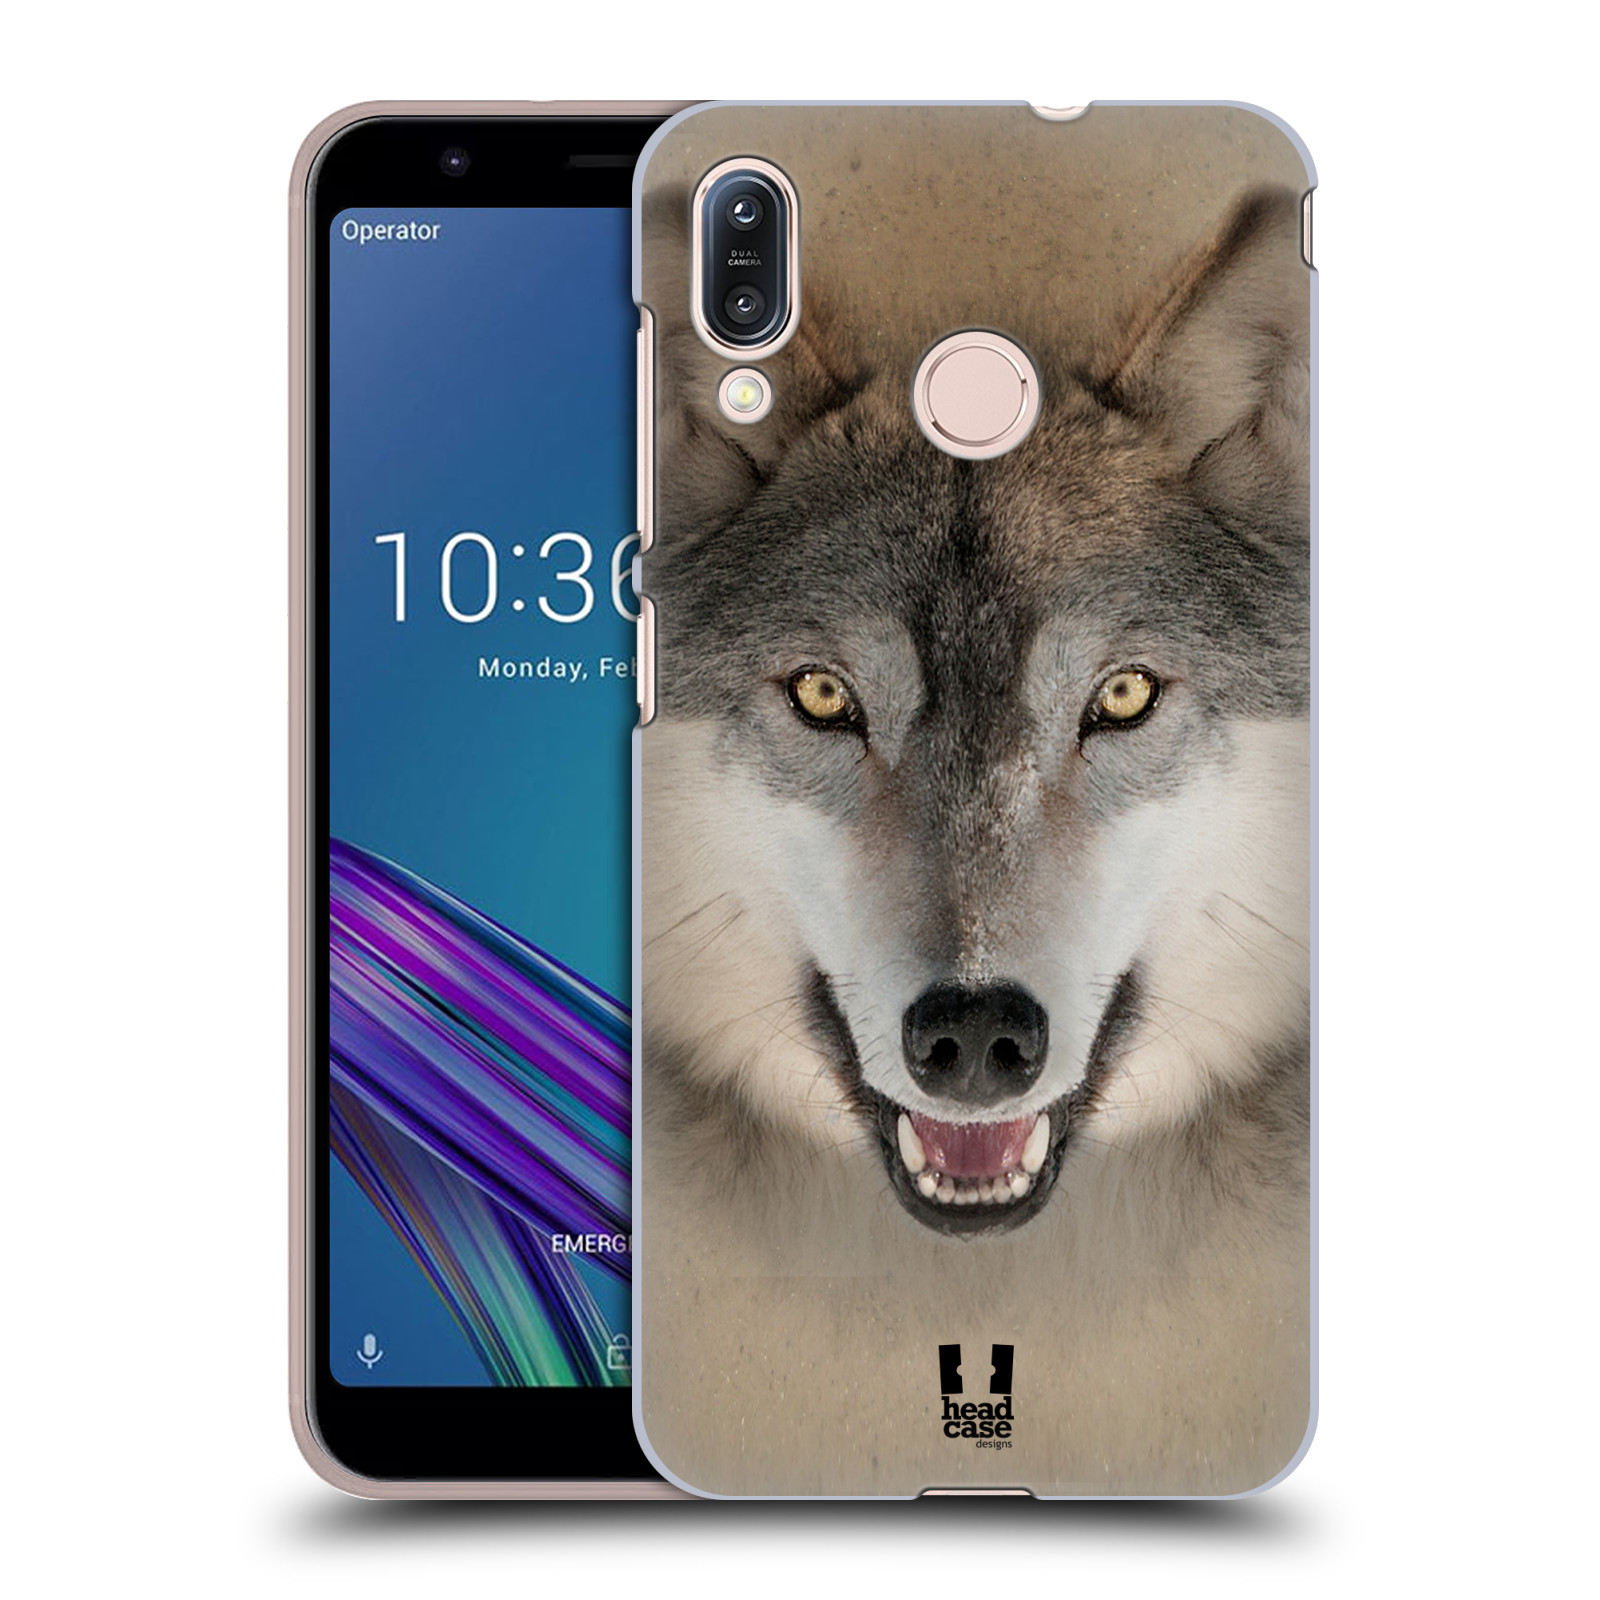 Pouzdro na mobil Asus Zenfone Max M1 (ZB555KL) - HEAD CASE - vzor Zvířecí tváře 2 vlk šedý